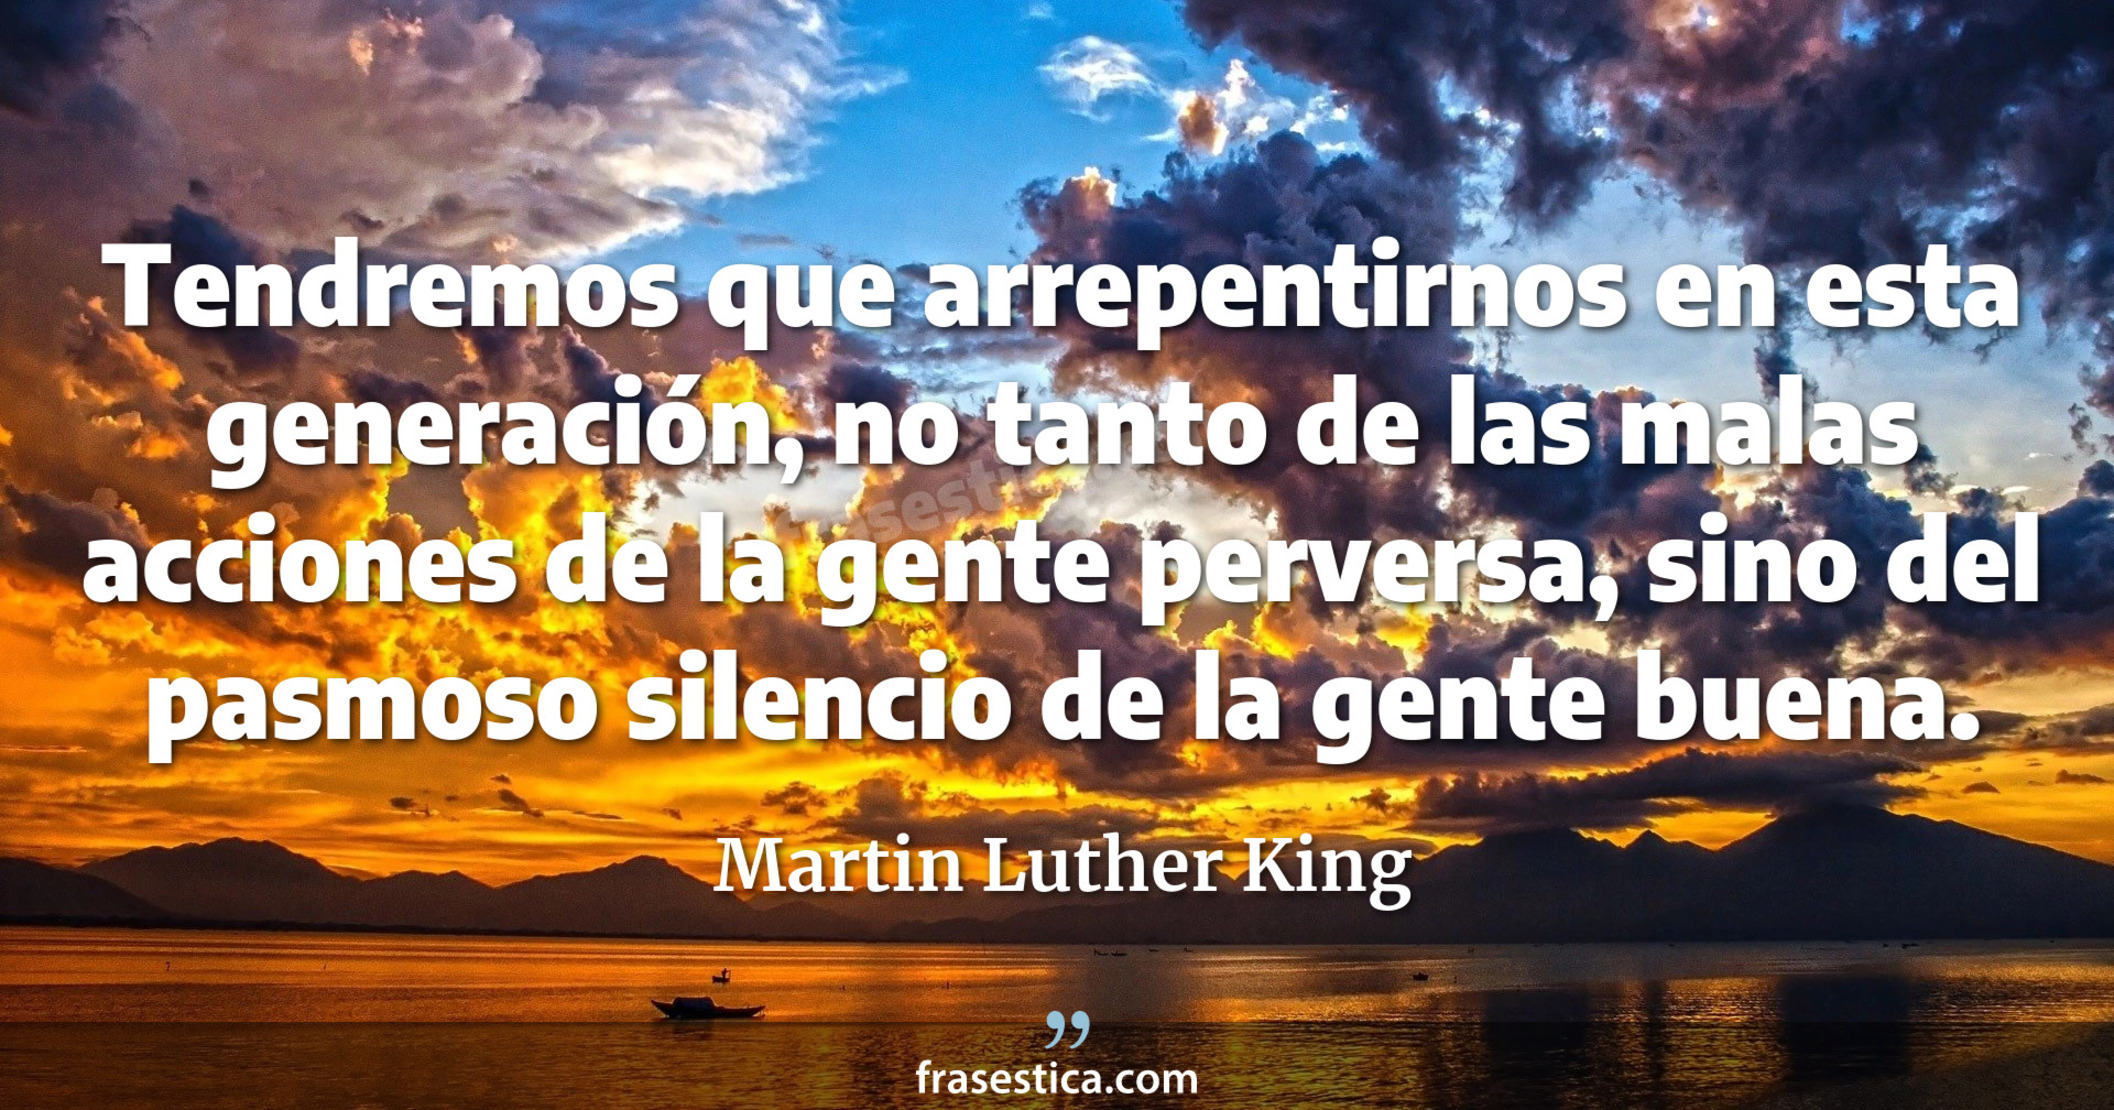 Tendremos que arrepentirnos en esta generación, no tanto de las malas acciones de la gente perversa, sino del pasmoso silencio de la gente buena. - Martin Luther King